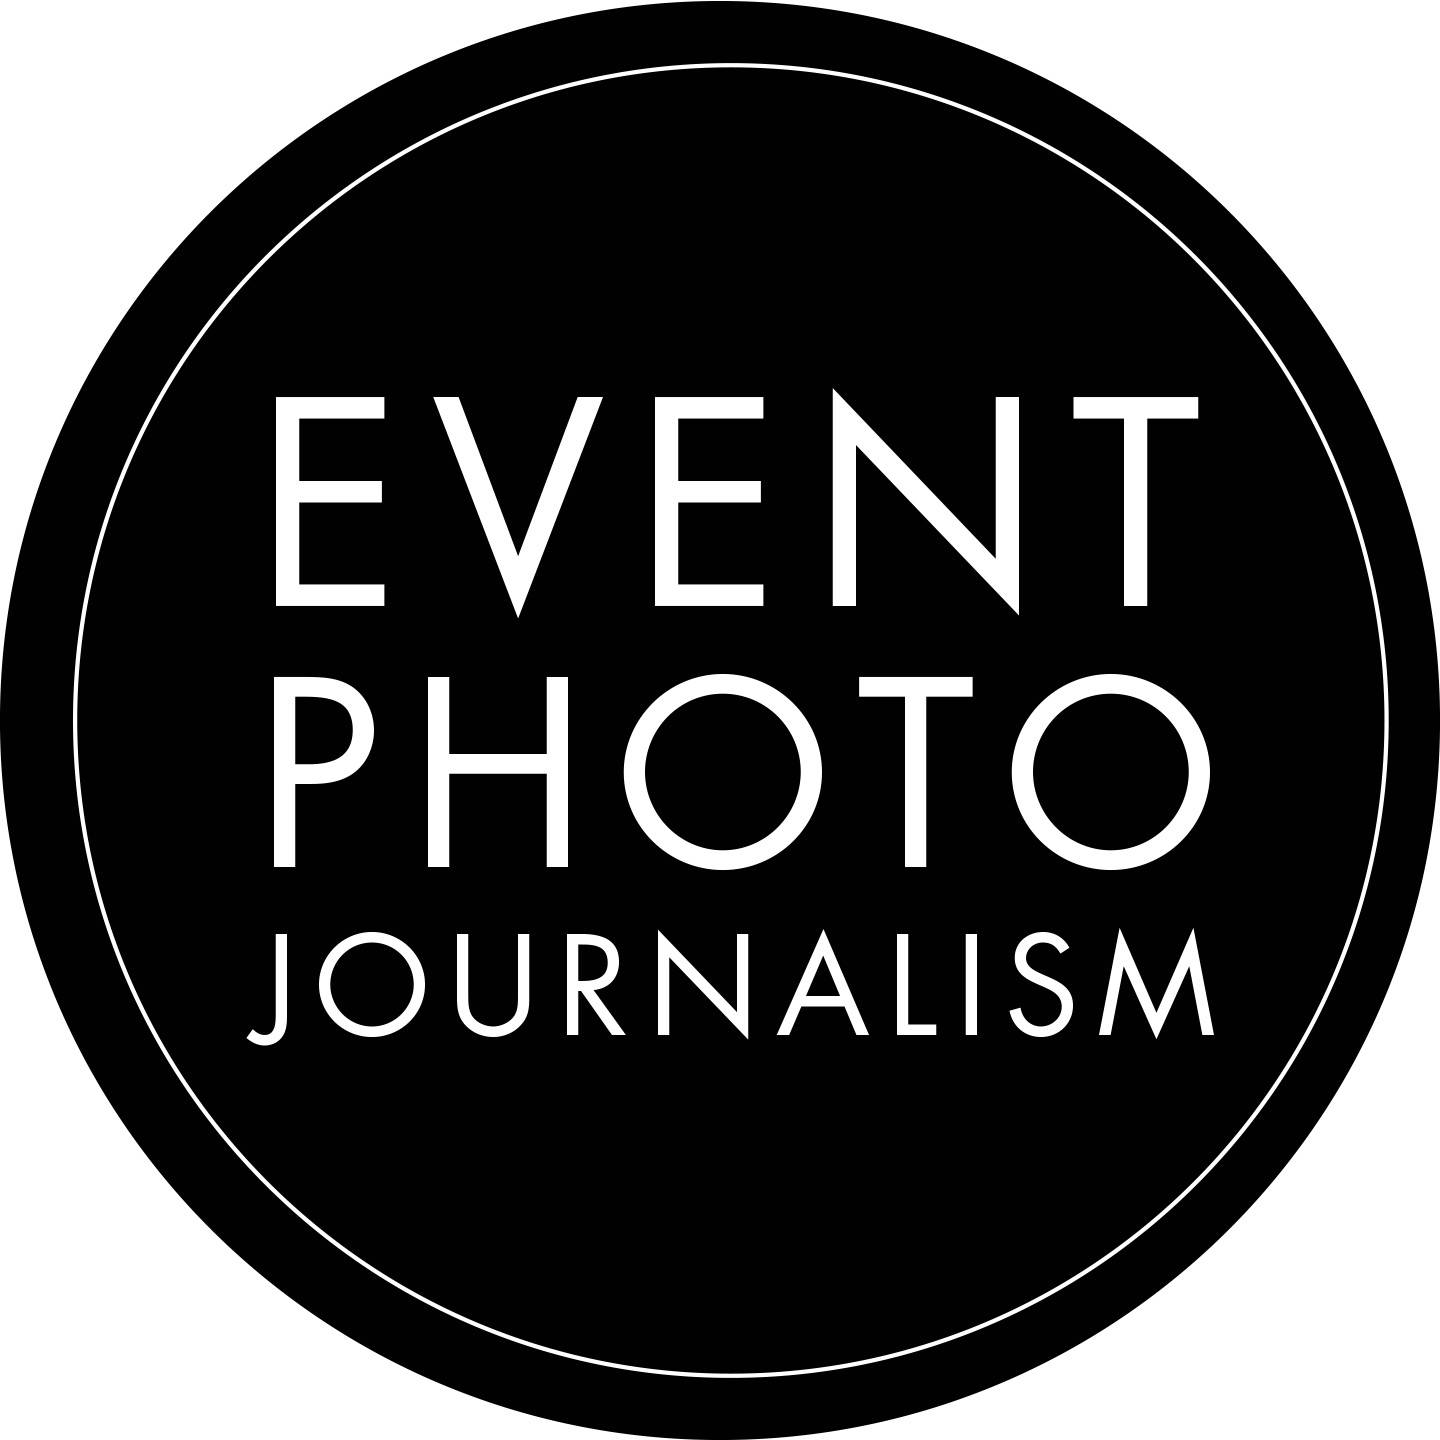 (c) Eventphotojournalism.com